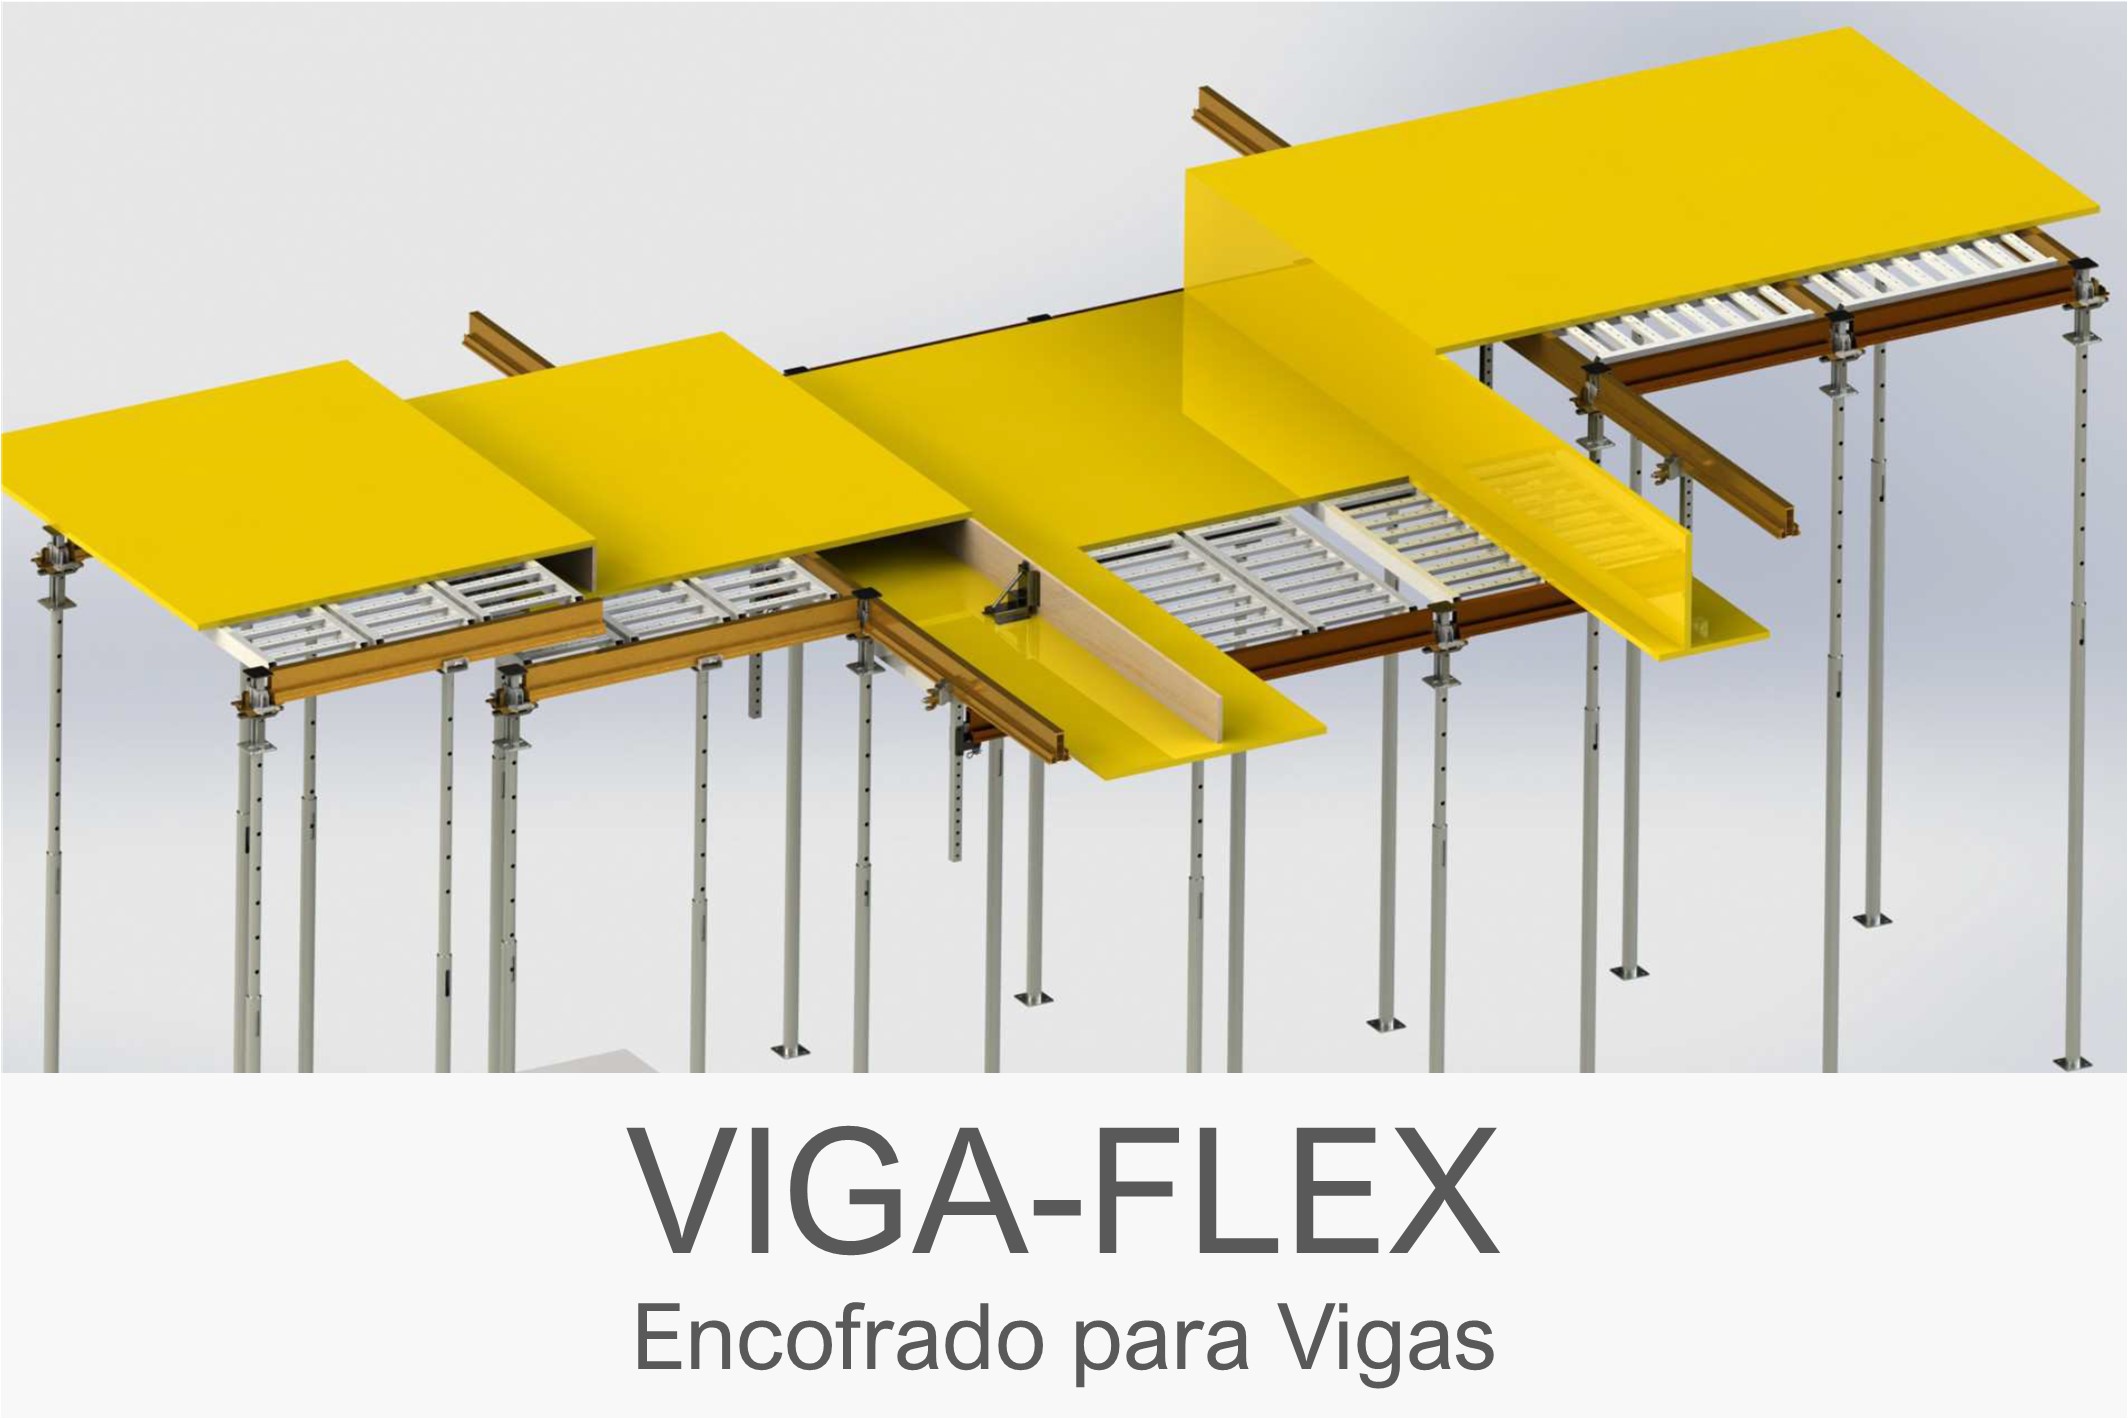 Encofrado para Vigas VIGA-FLEX